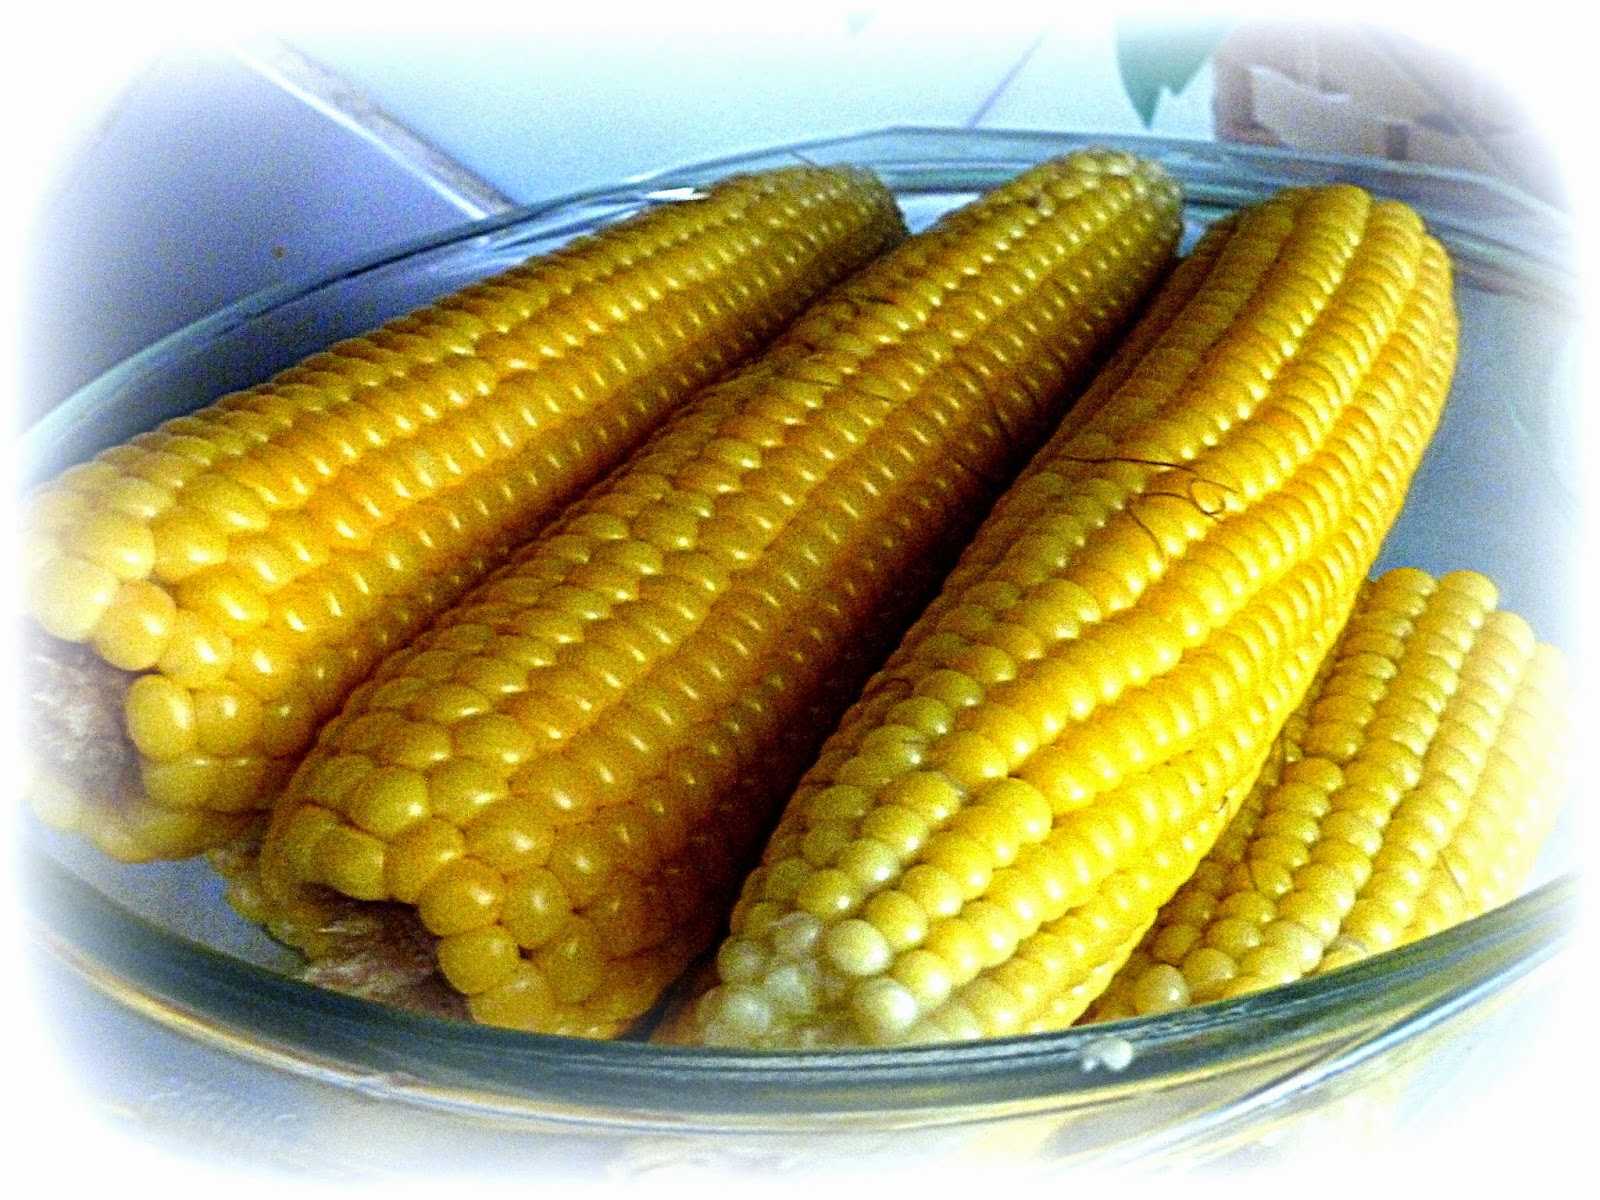 Как заморозить кукурузу на зиму в домашних условиях: в початках или зёрнами. рецепты